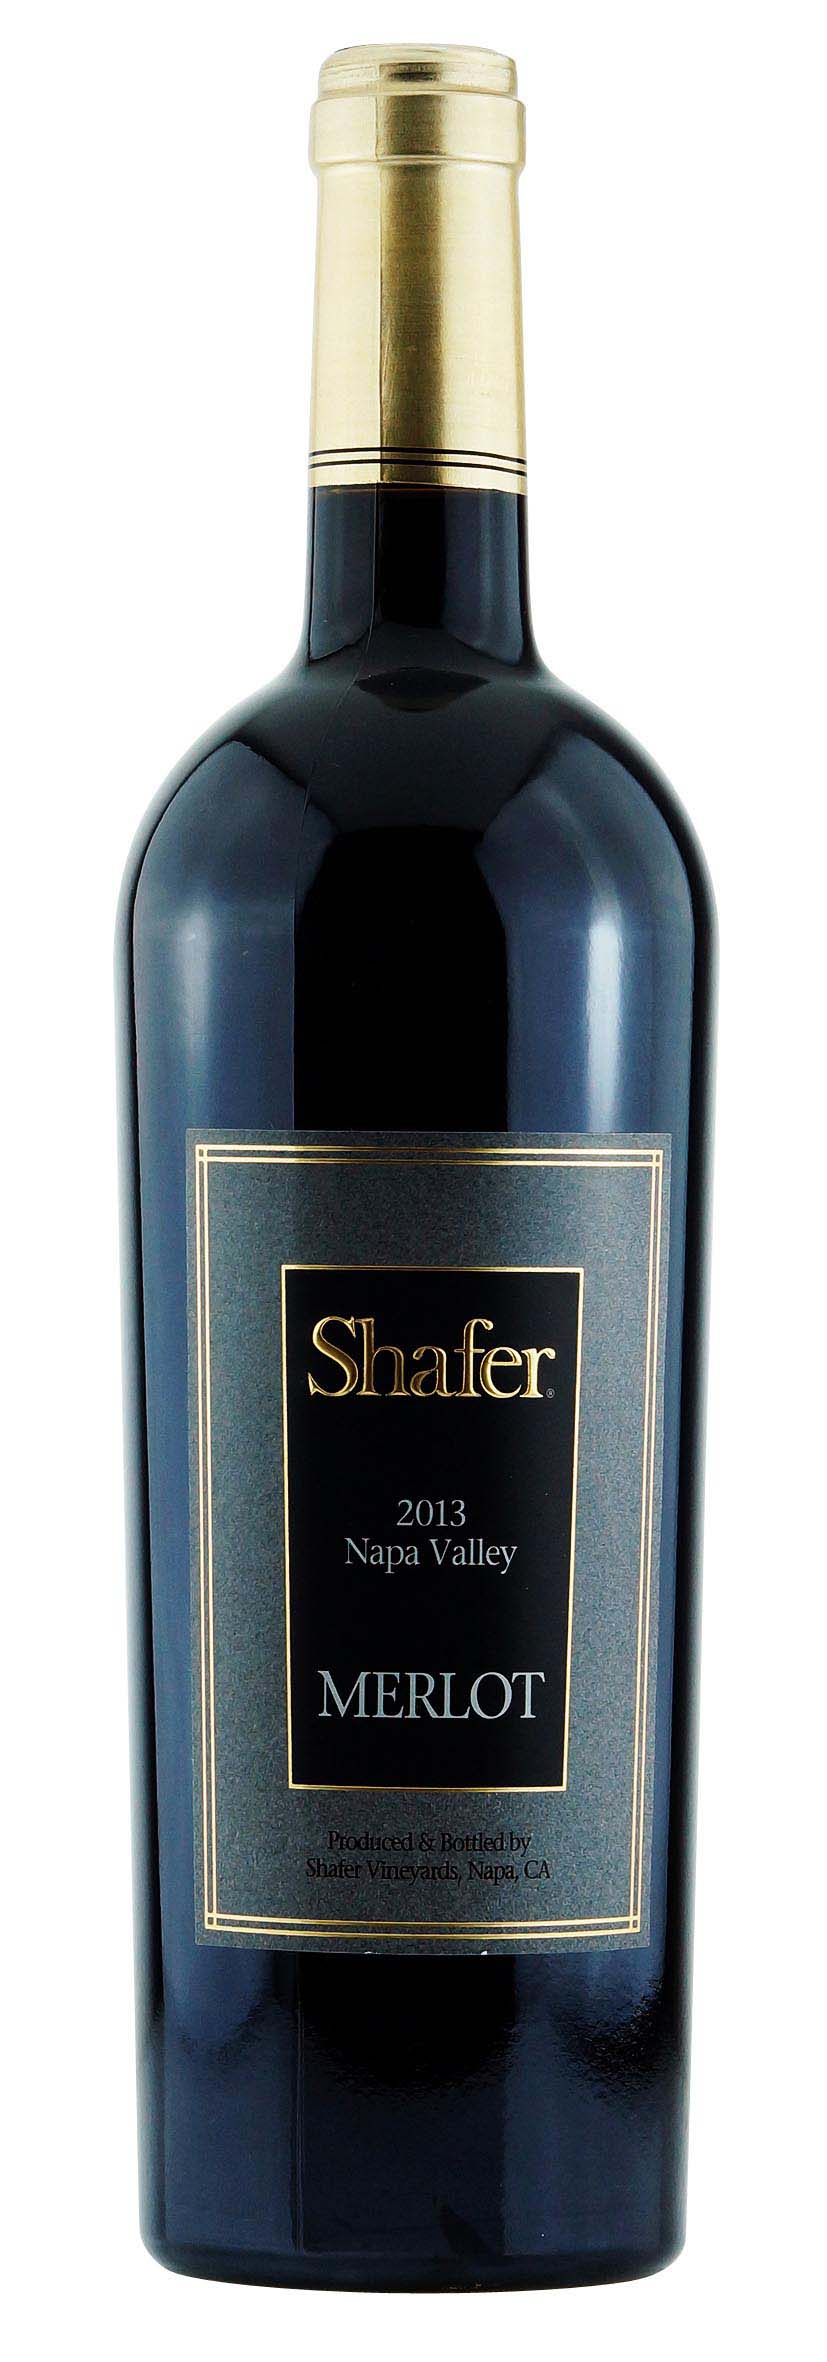 Napa Valley Merlot Shafer Vineyards 2013